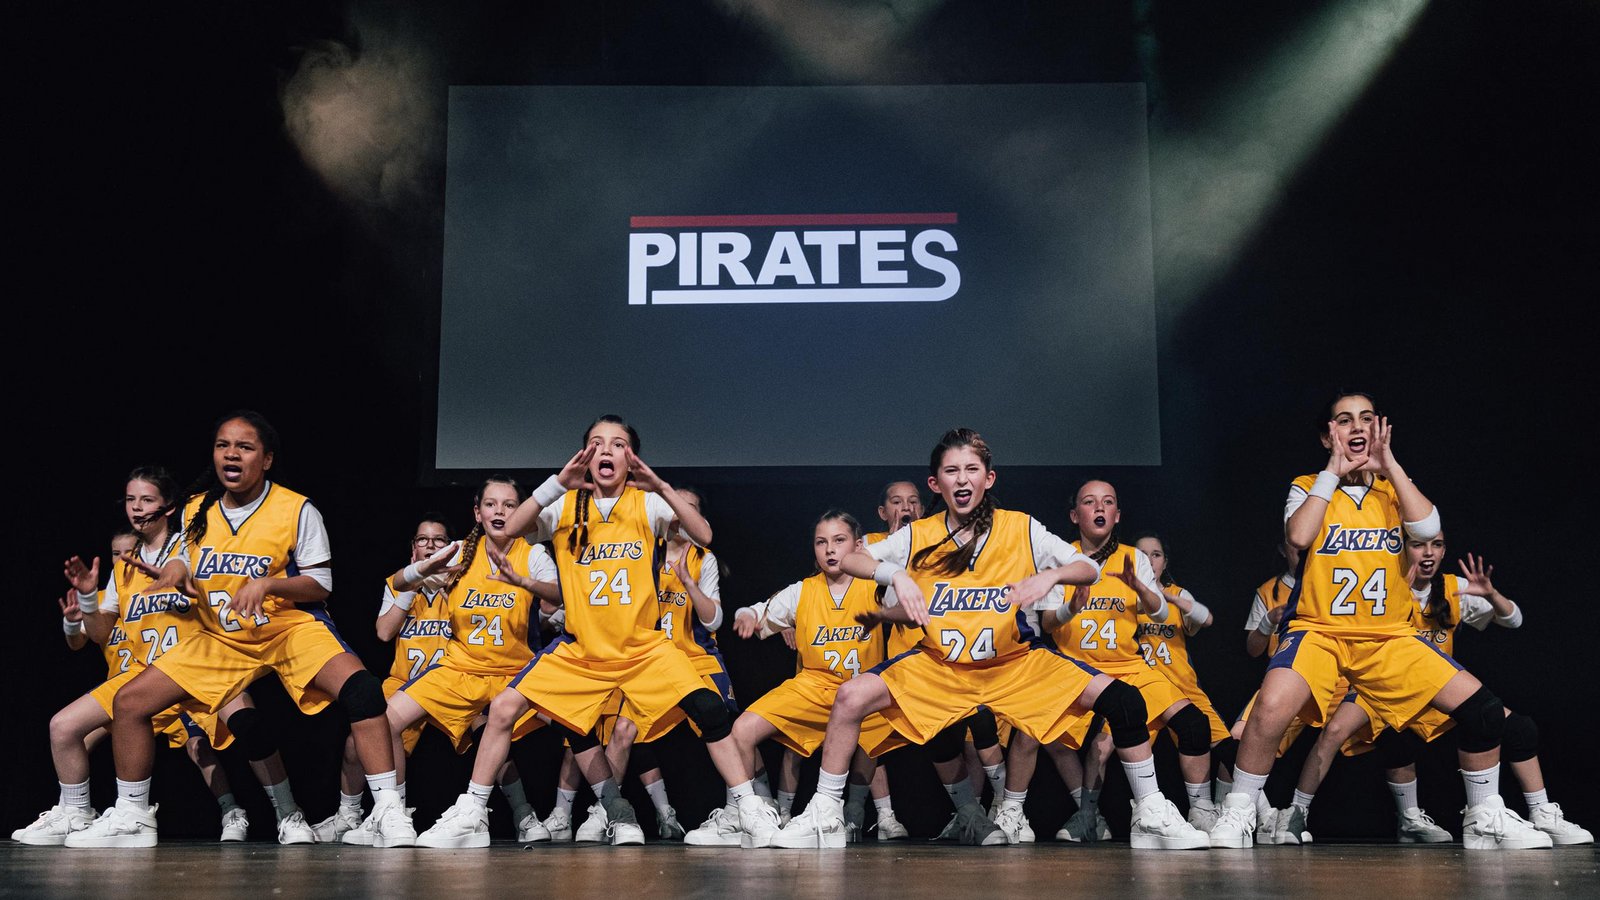 Die Gruppe Pirates der Dance Company Vaihingen sichert sich die süddeutsche Meisterschaft. Foto: privat